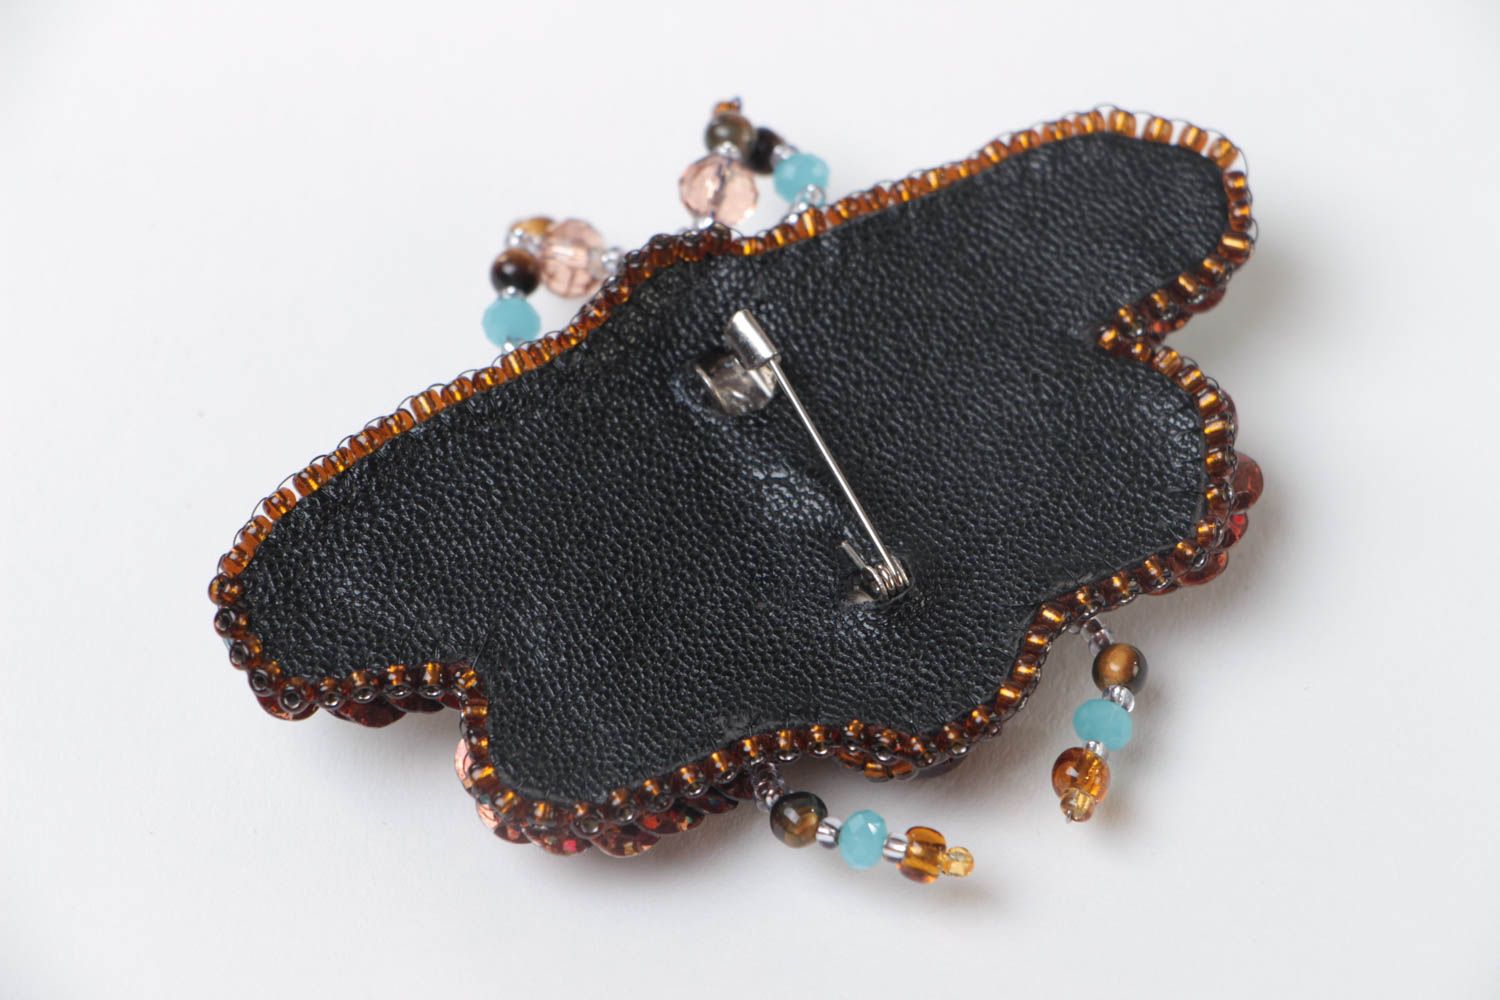 Объемная брошь с вышивкой бисером и камнями ручной работы в виде жука голубая фото 4